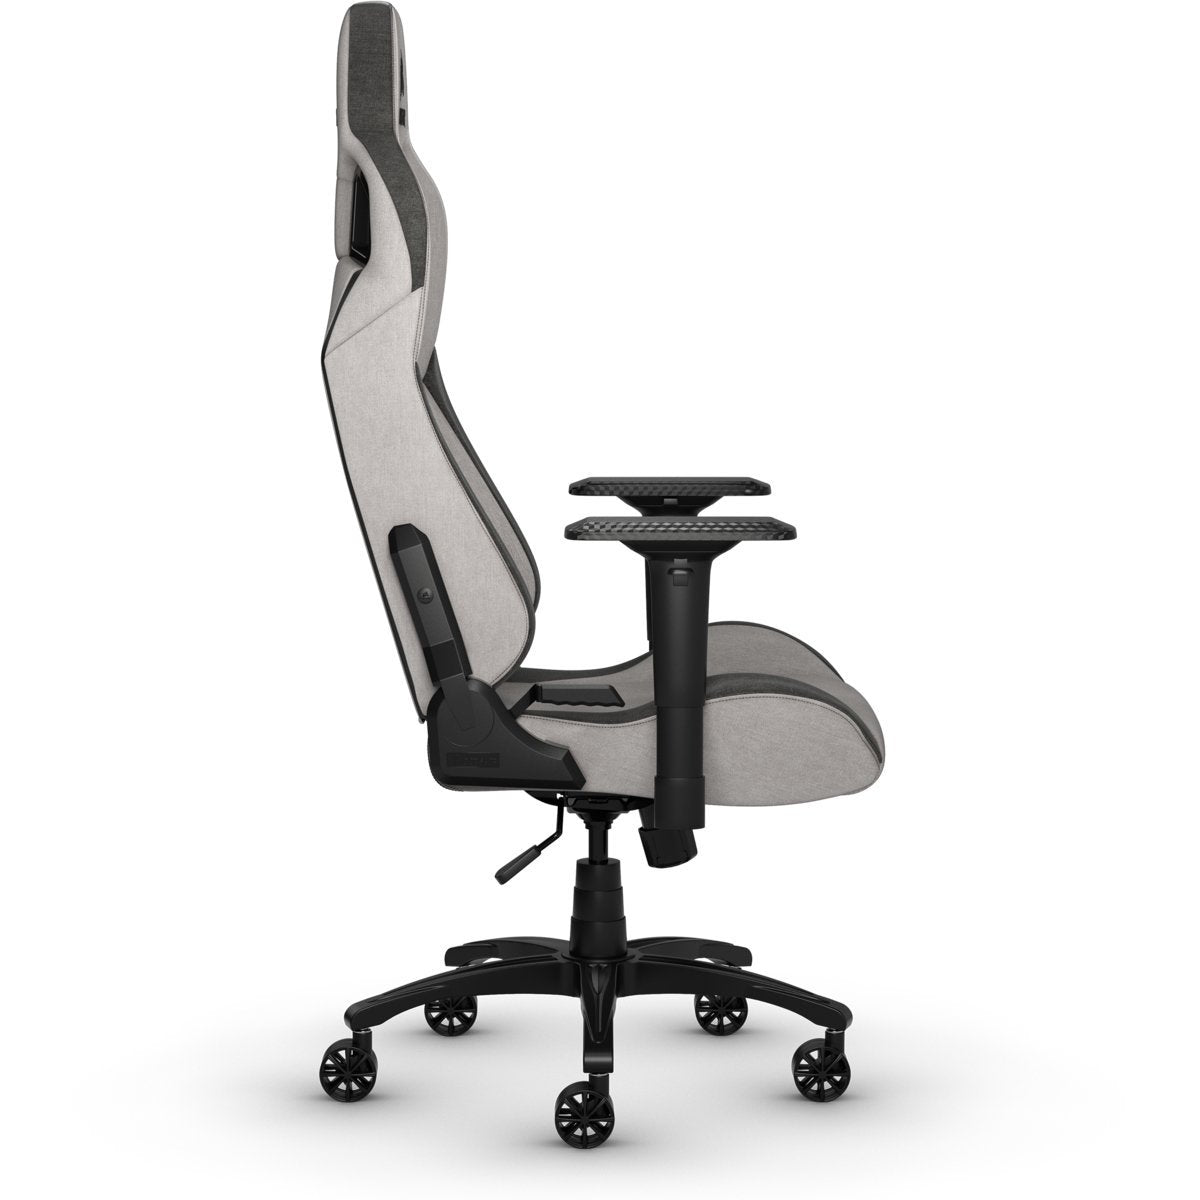 Corsair T3 RUSH Fabric Gaming Chair - Gray/White - Store 974 | ستور ٩٧٤